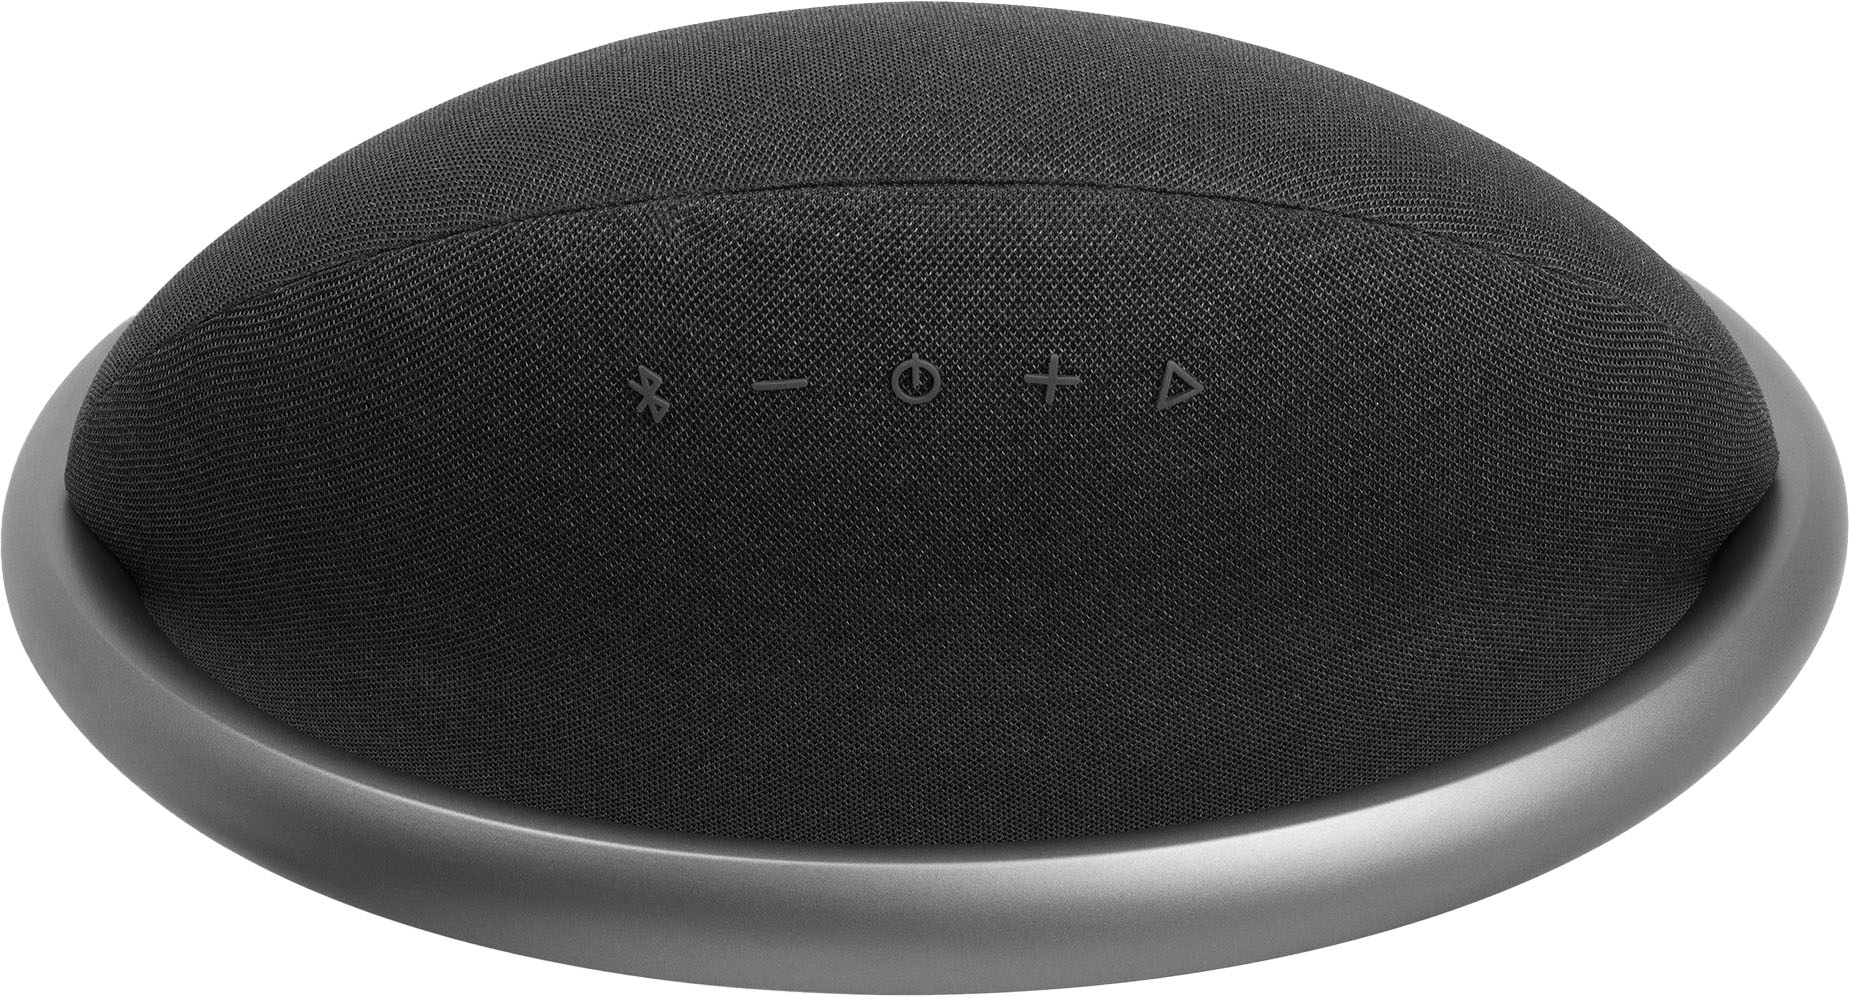 Black Speaker 7 Portable Bluetooth HKOS7BLKAM Studio Stereo Best Buy Onyx JBL -